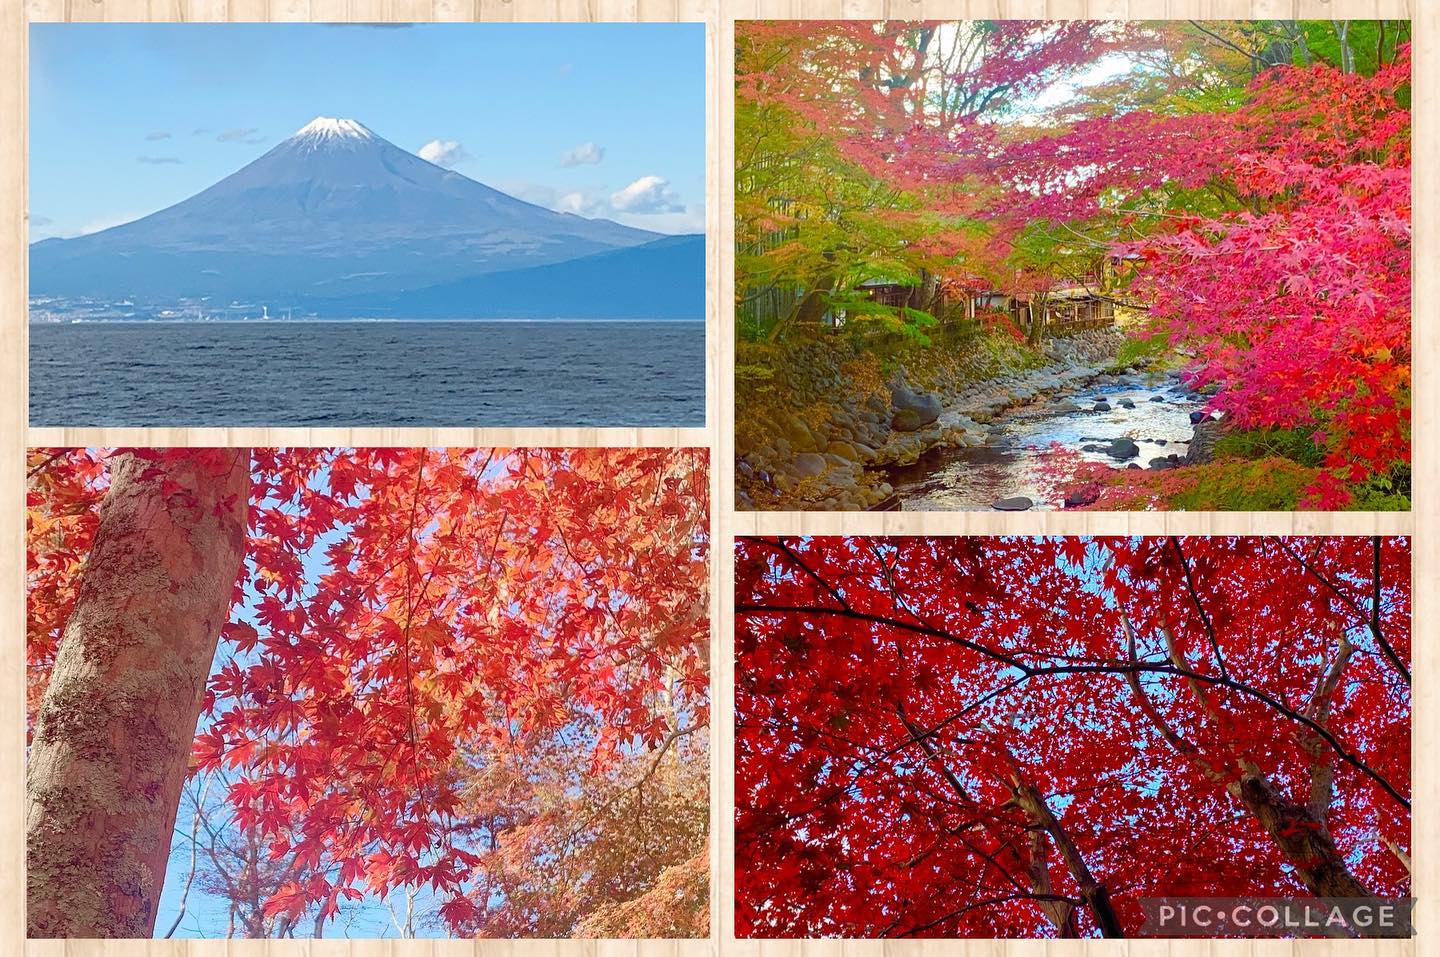 【富士山と紅葉】紅葉の映える青空が広がった静岡県内。富士山もよく見え、紅葉も見頃11月最後の週末、去り行く秋を楽しむのはいかがでしょうか記:村松晶子（脳活わらべうたティーチャー・静岡）#紅葉　#富士山　#わらべうたベビーマッサージ　#脳活わらべうた　#秋を楽しむ(Instagram)